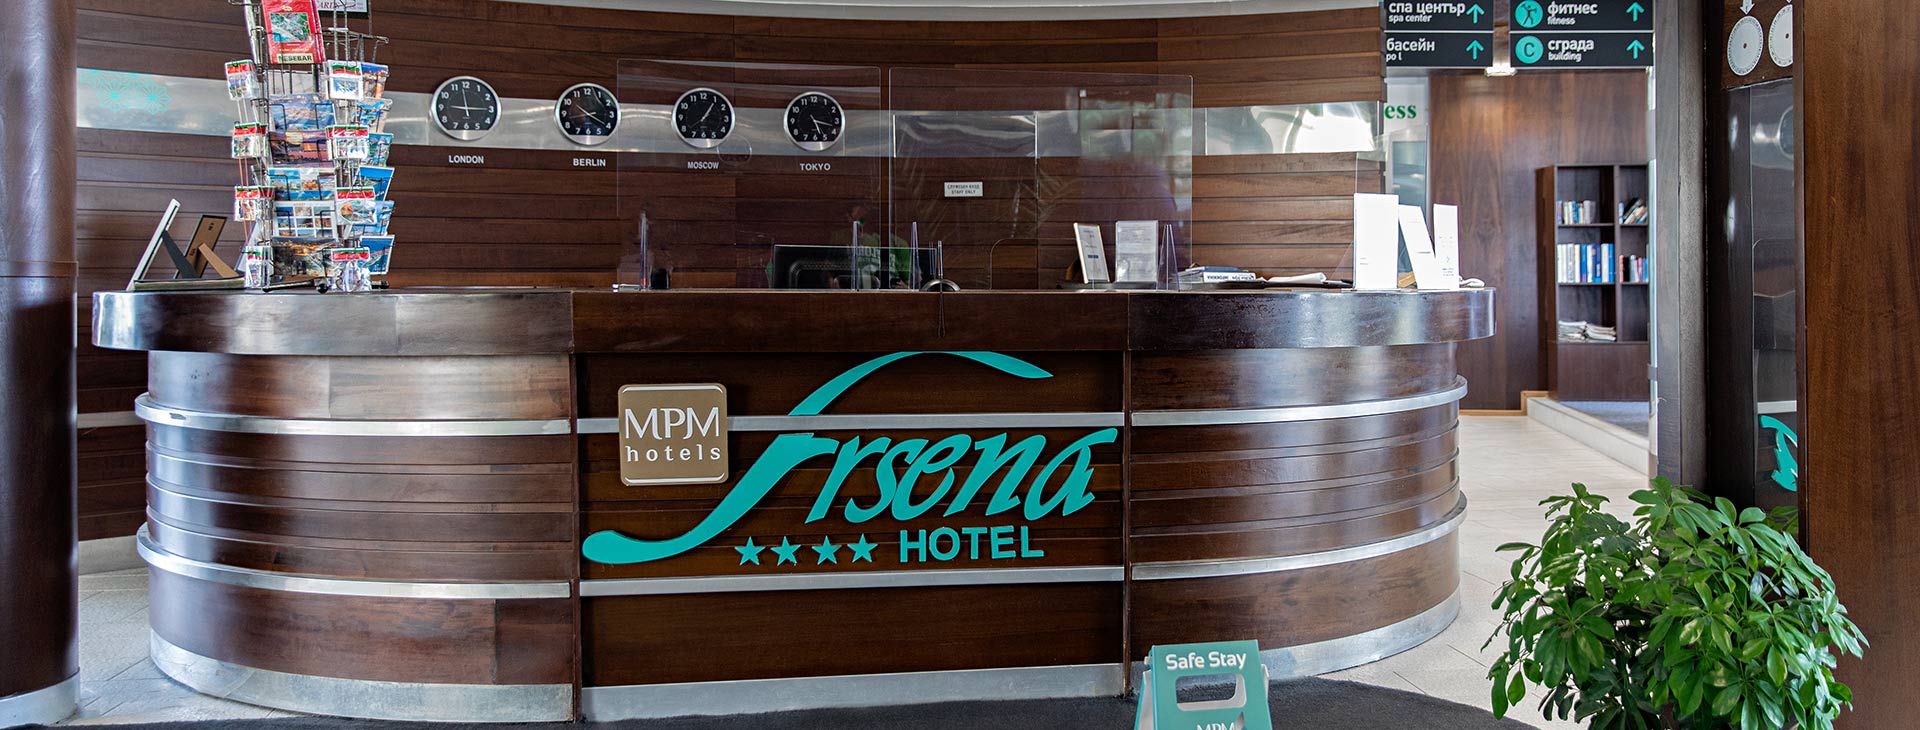 Hotel MPM Arsena Obrázok16